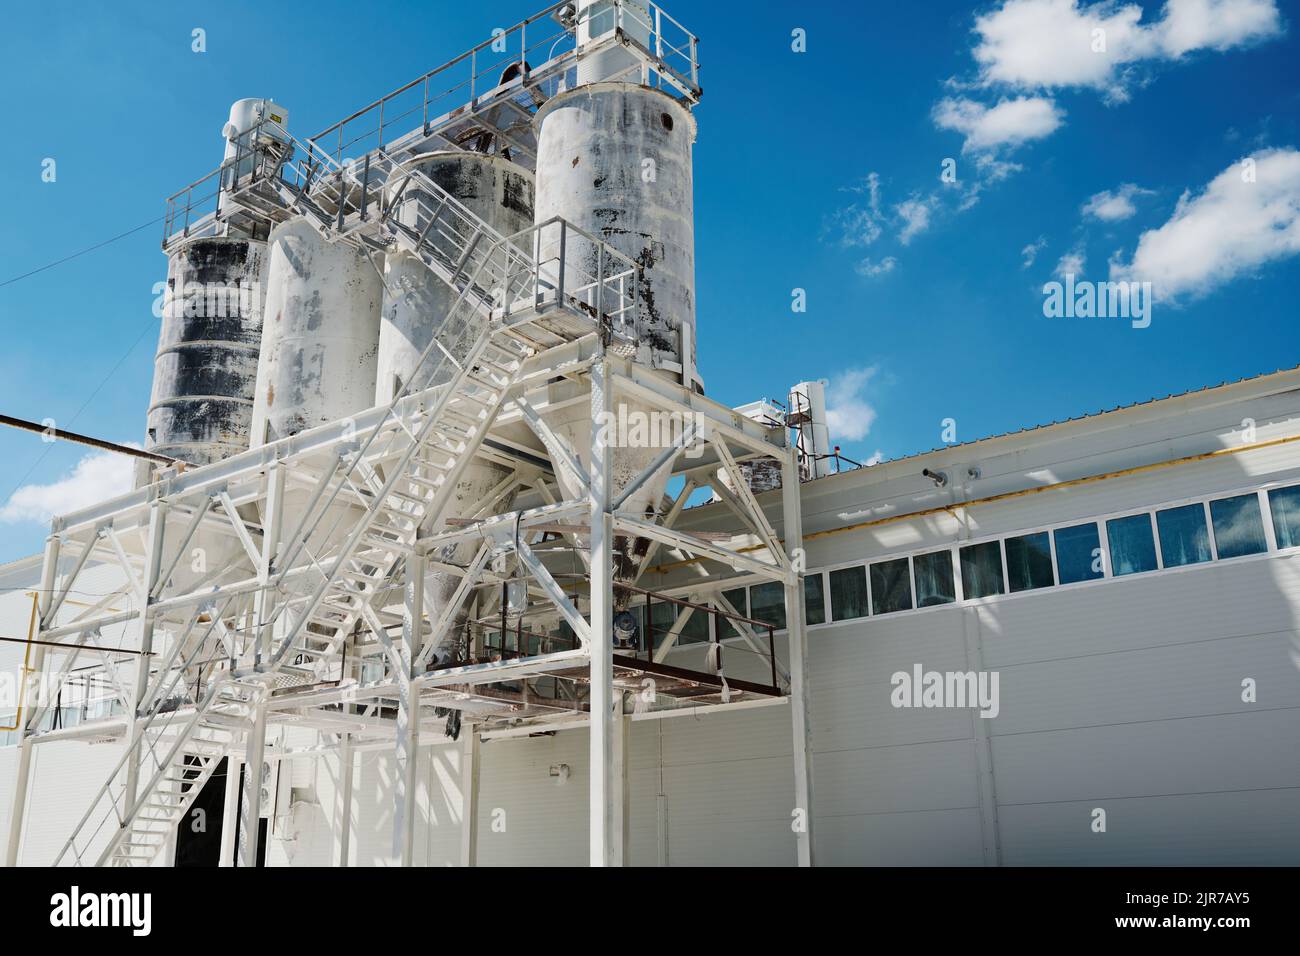 Riesige metallische Struktur in weiß lackiert, die Gebäude der modernen Fabrik oder Industrieanlage Maschinen oder etwas anderes Zeug produziert Stockfoto